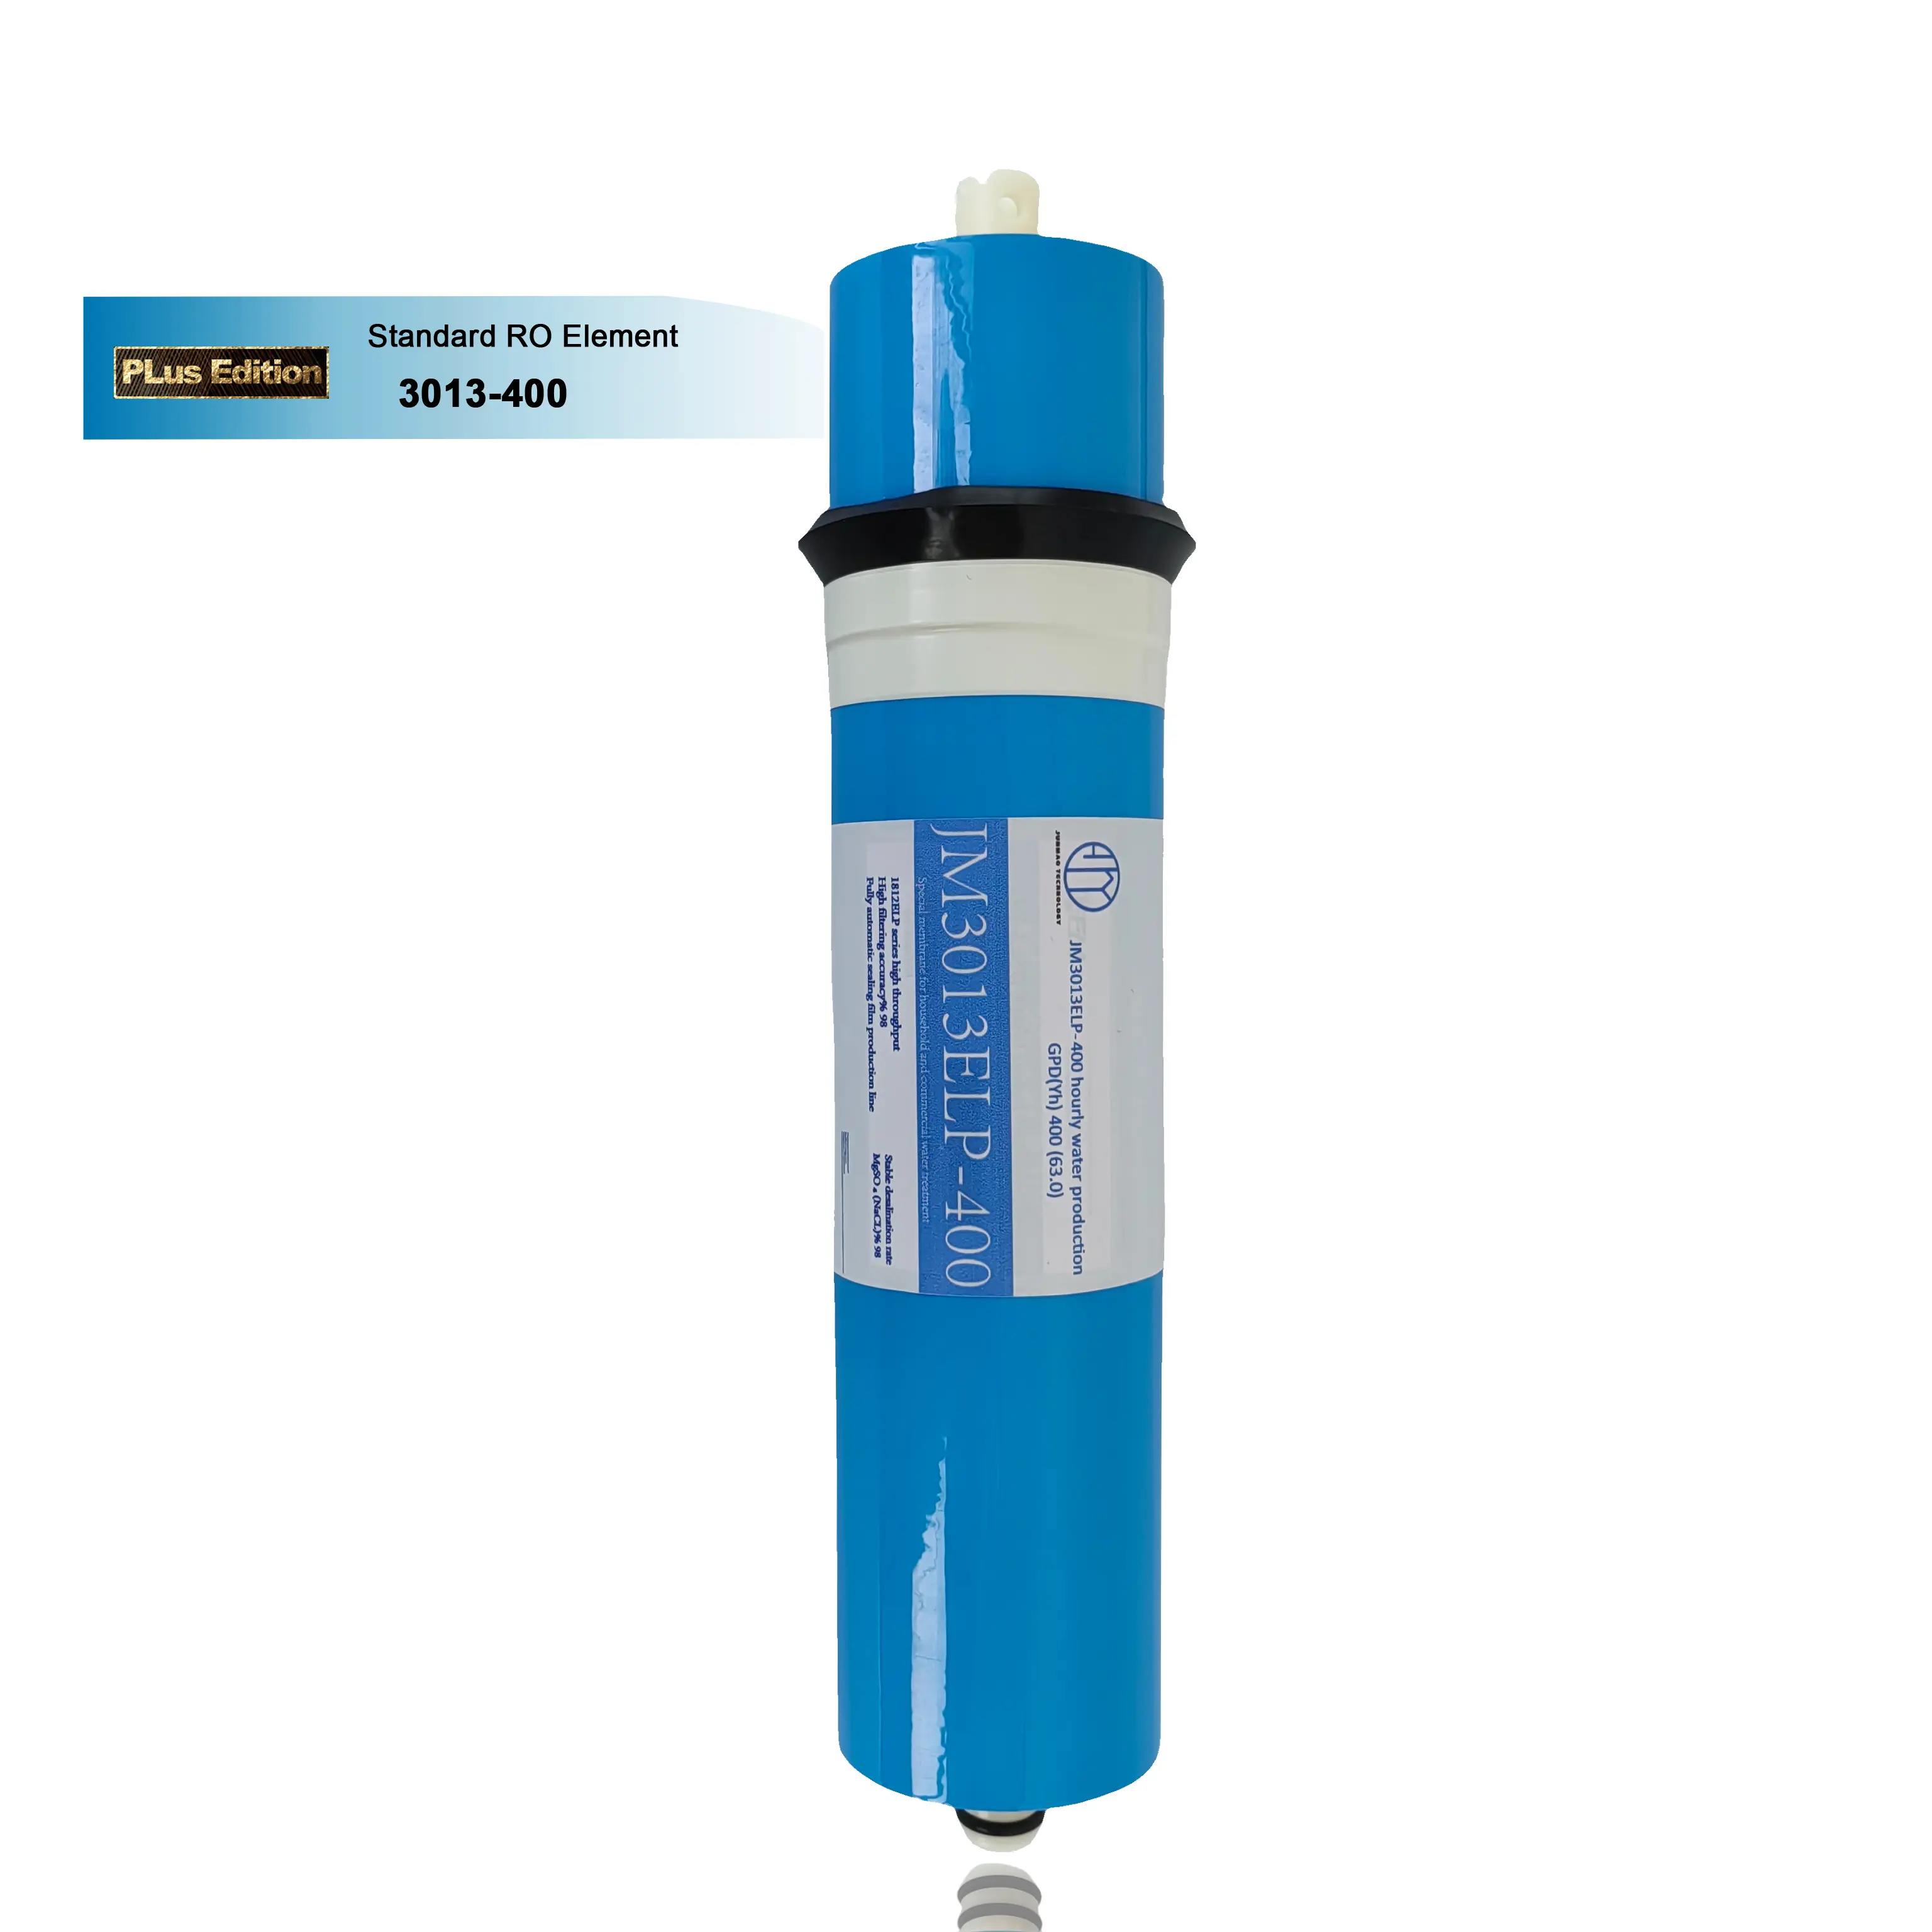 Membrana de filtro ro doméstica A PLusEdition 3013 400GDP para sistema de filtro de agua de ósmosis inversa filtro de membrana ro